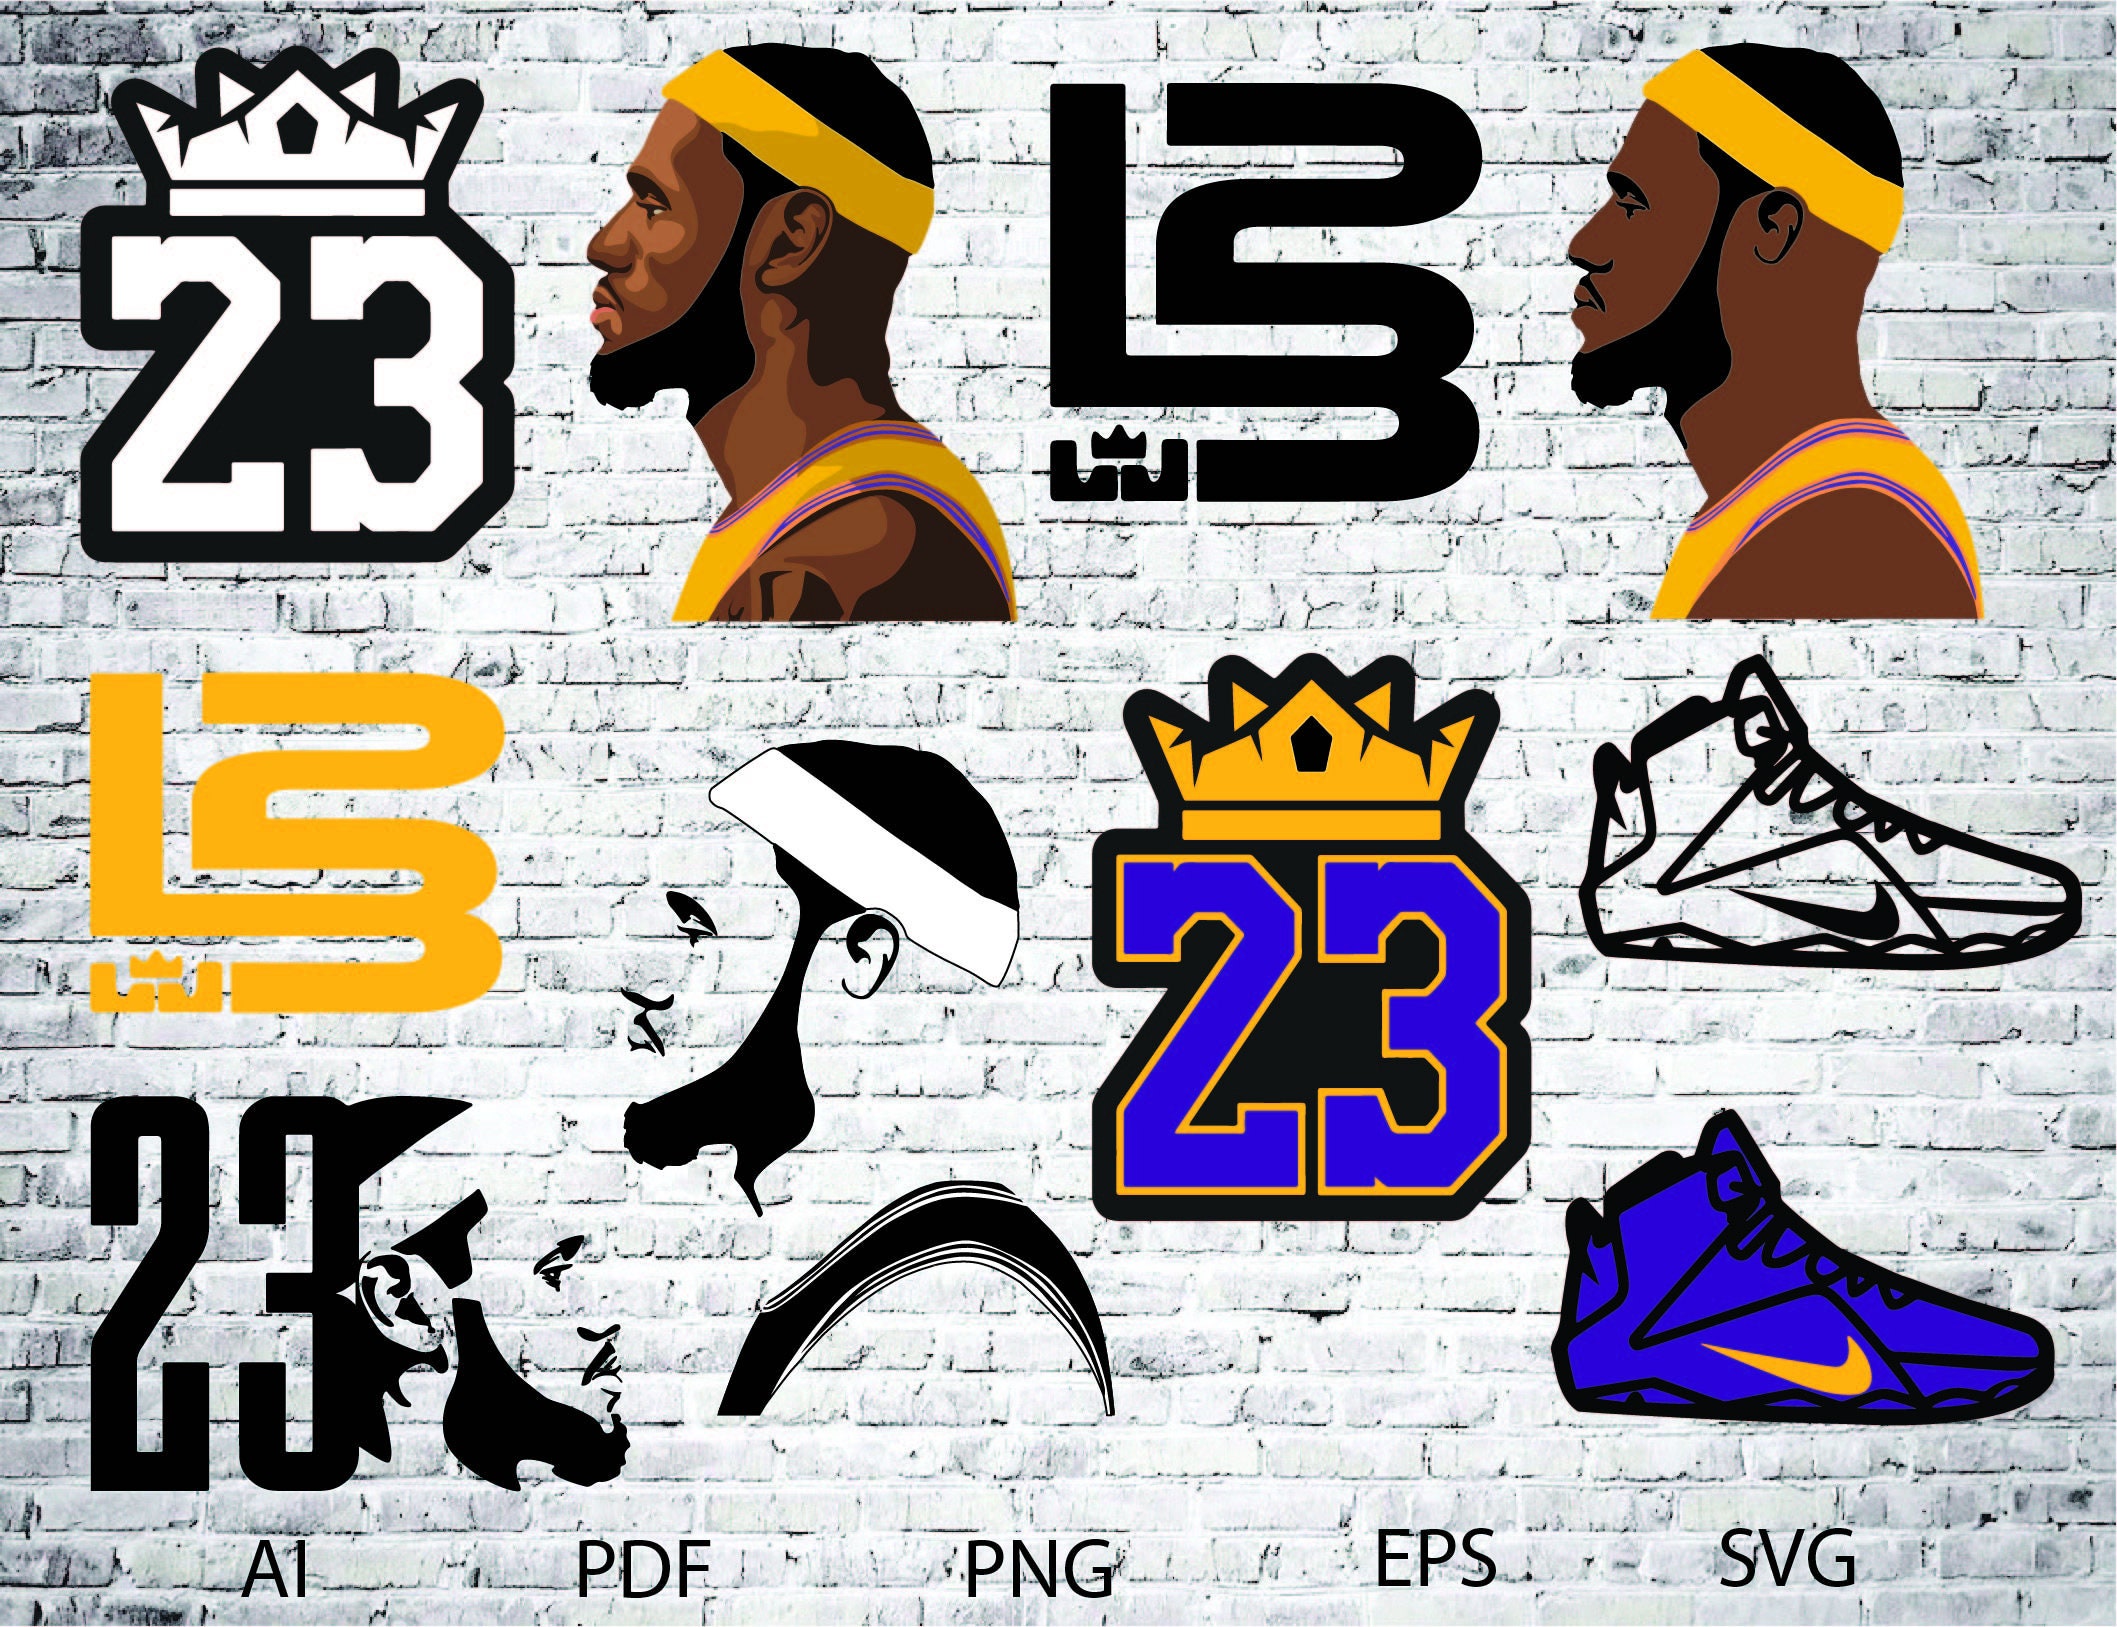 Js 24# Nba Lakers No.23 James Wallpaper Decorative Stickers Self